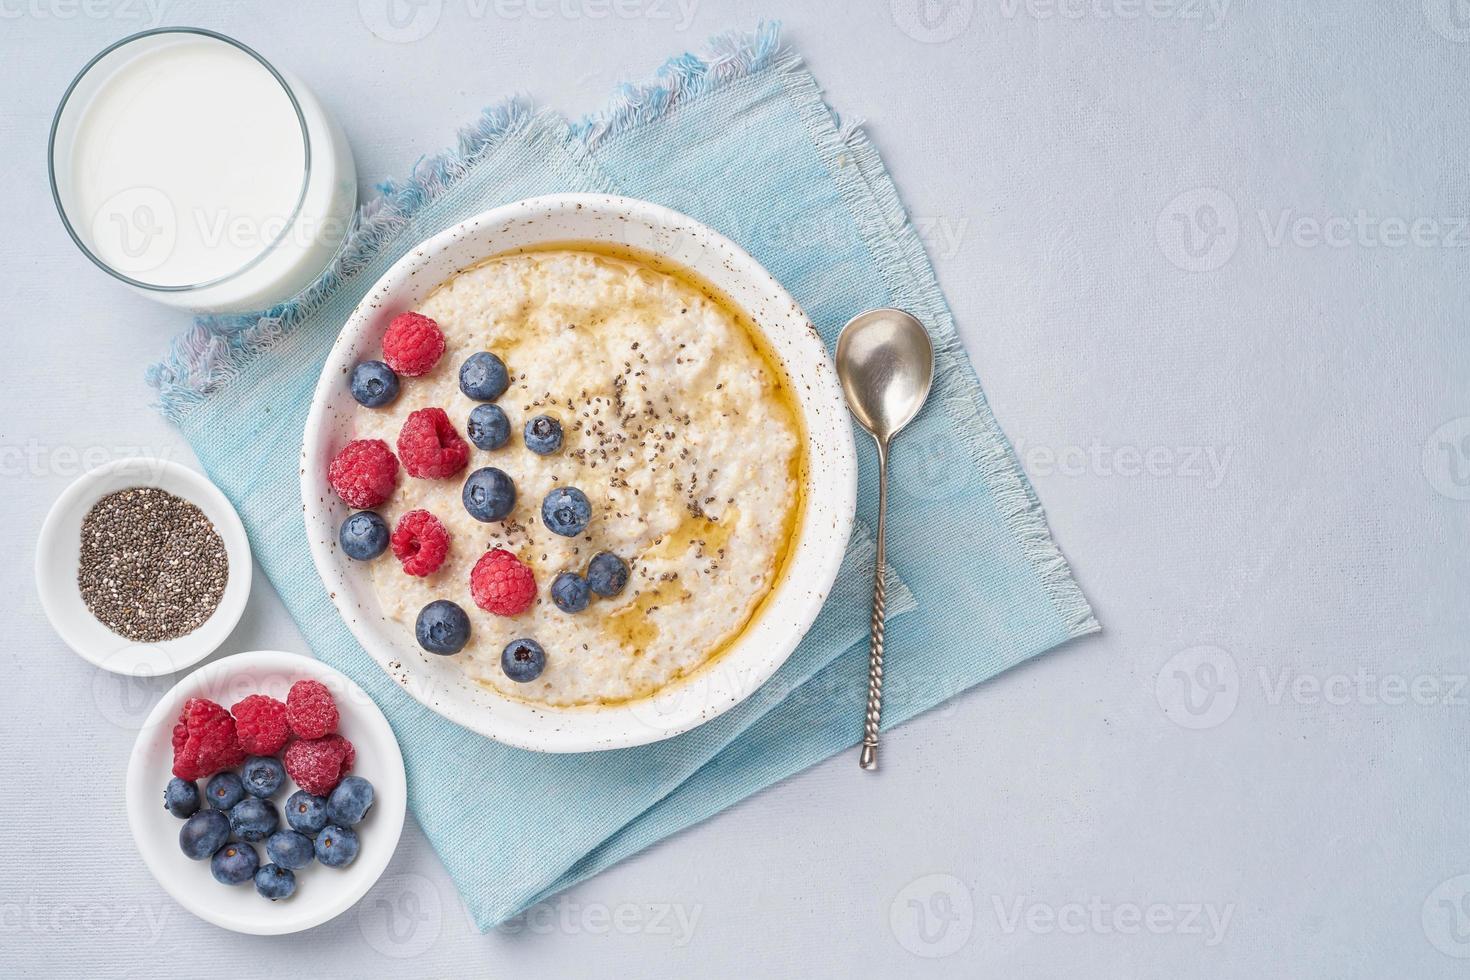 havermout met bessen, chia, ahornsiroop en glas melk op blauwe lichte achtergrond. bovenaanzicht, kopieer ruimte. gezond dieet ontbijt foto